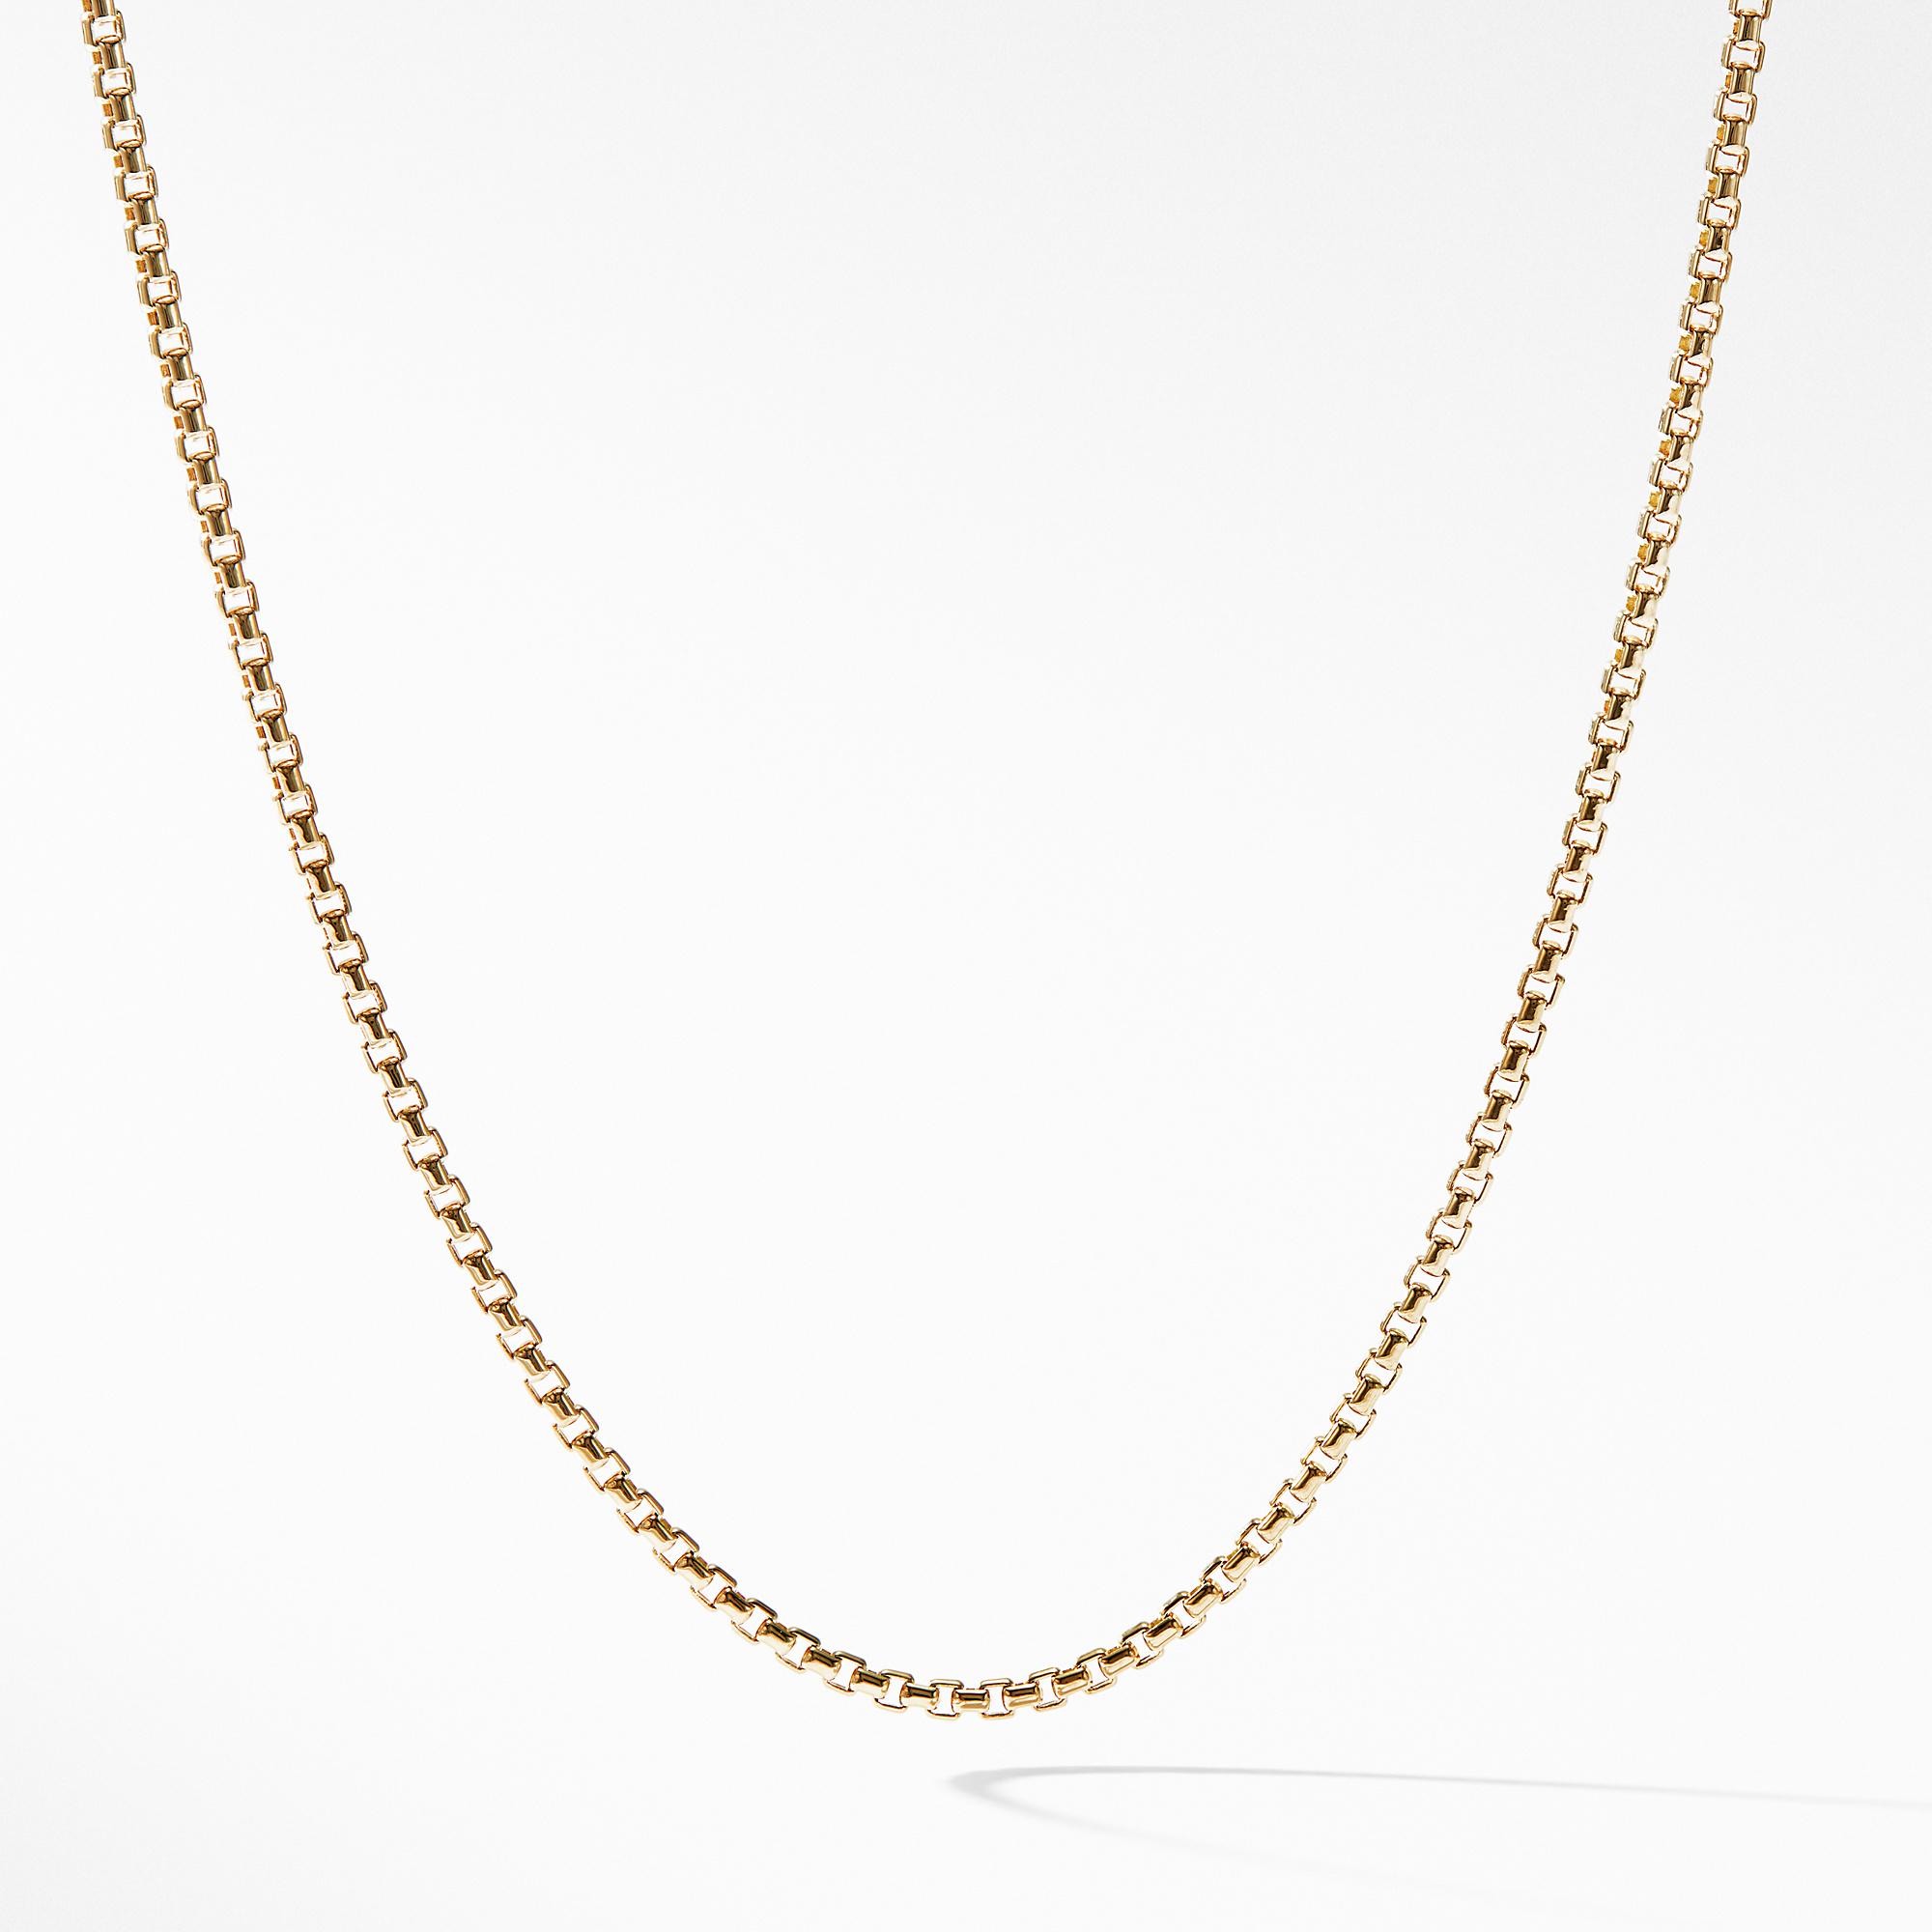 David Yurman Box Chain Necklace in 18K Yellow Gold, 18"